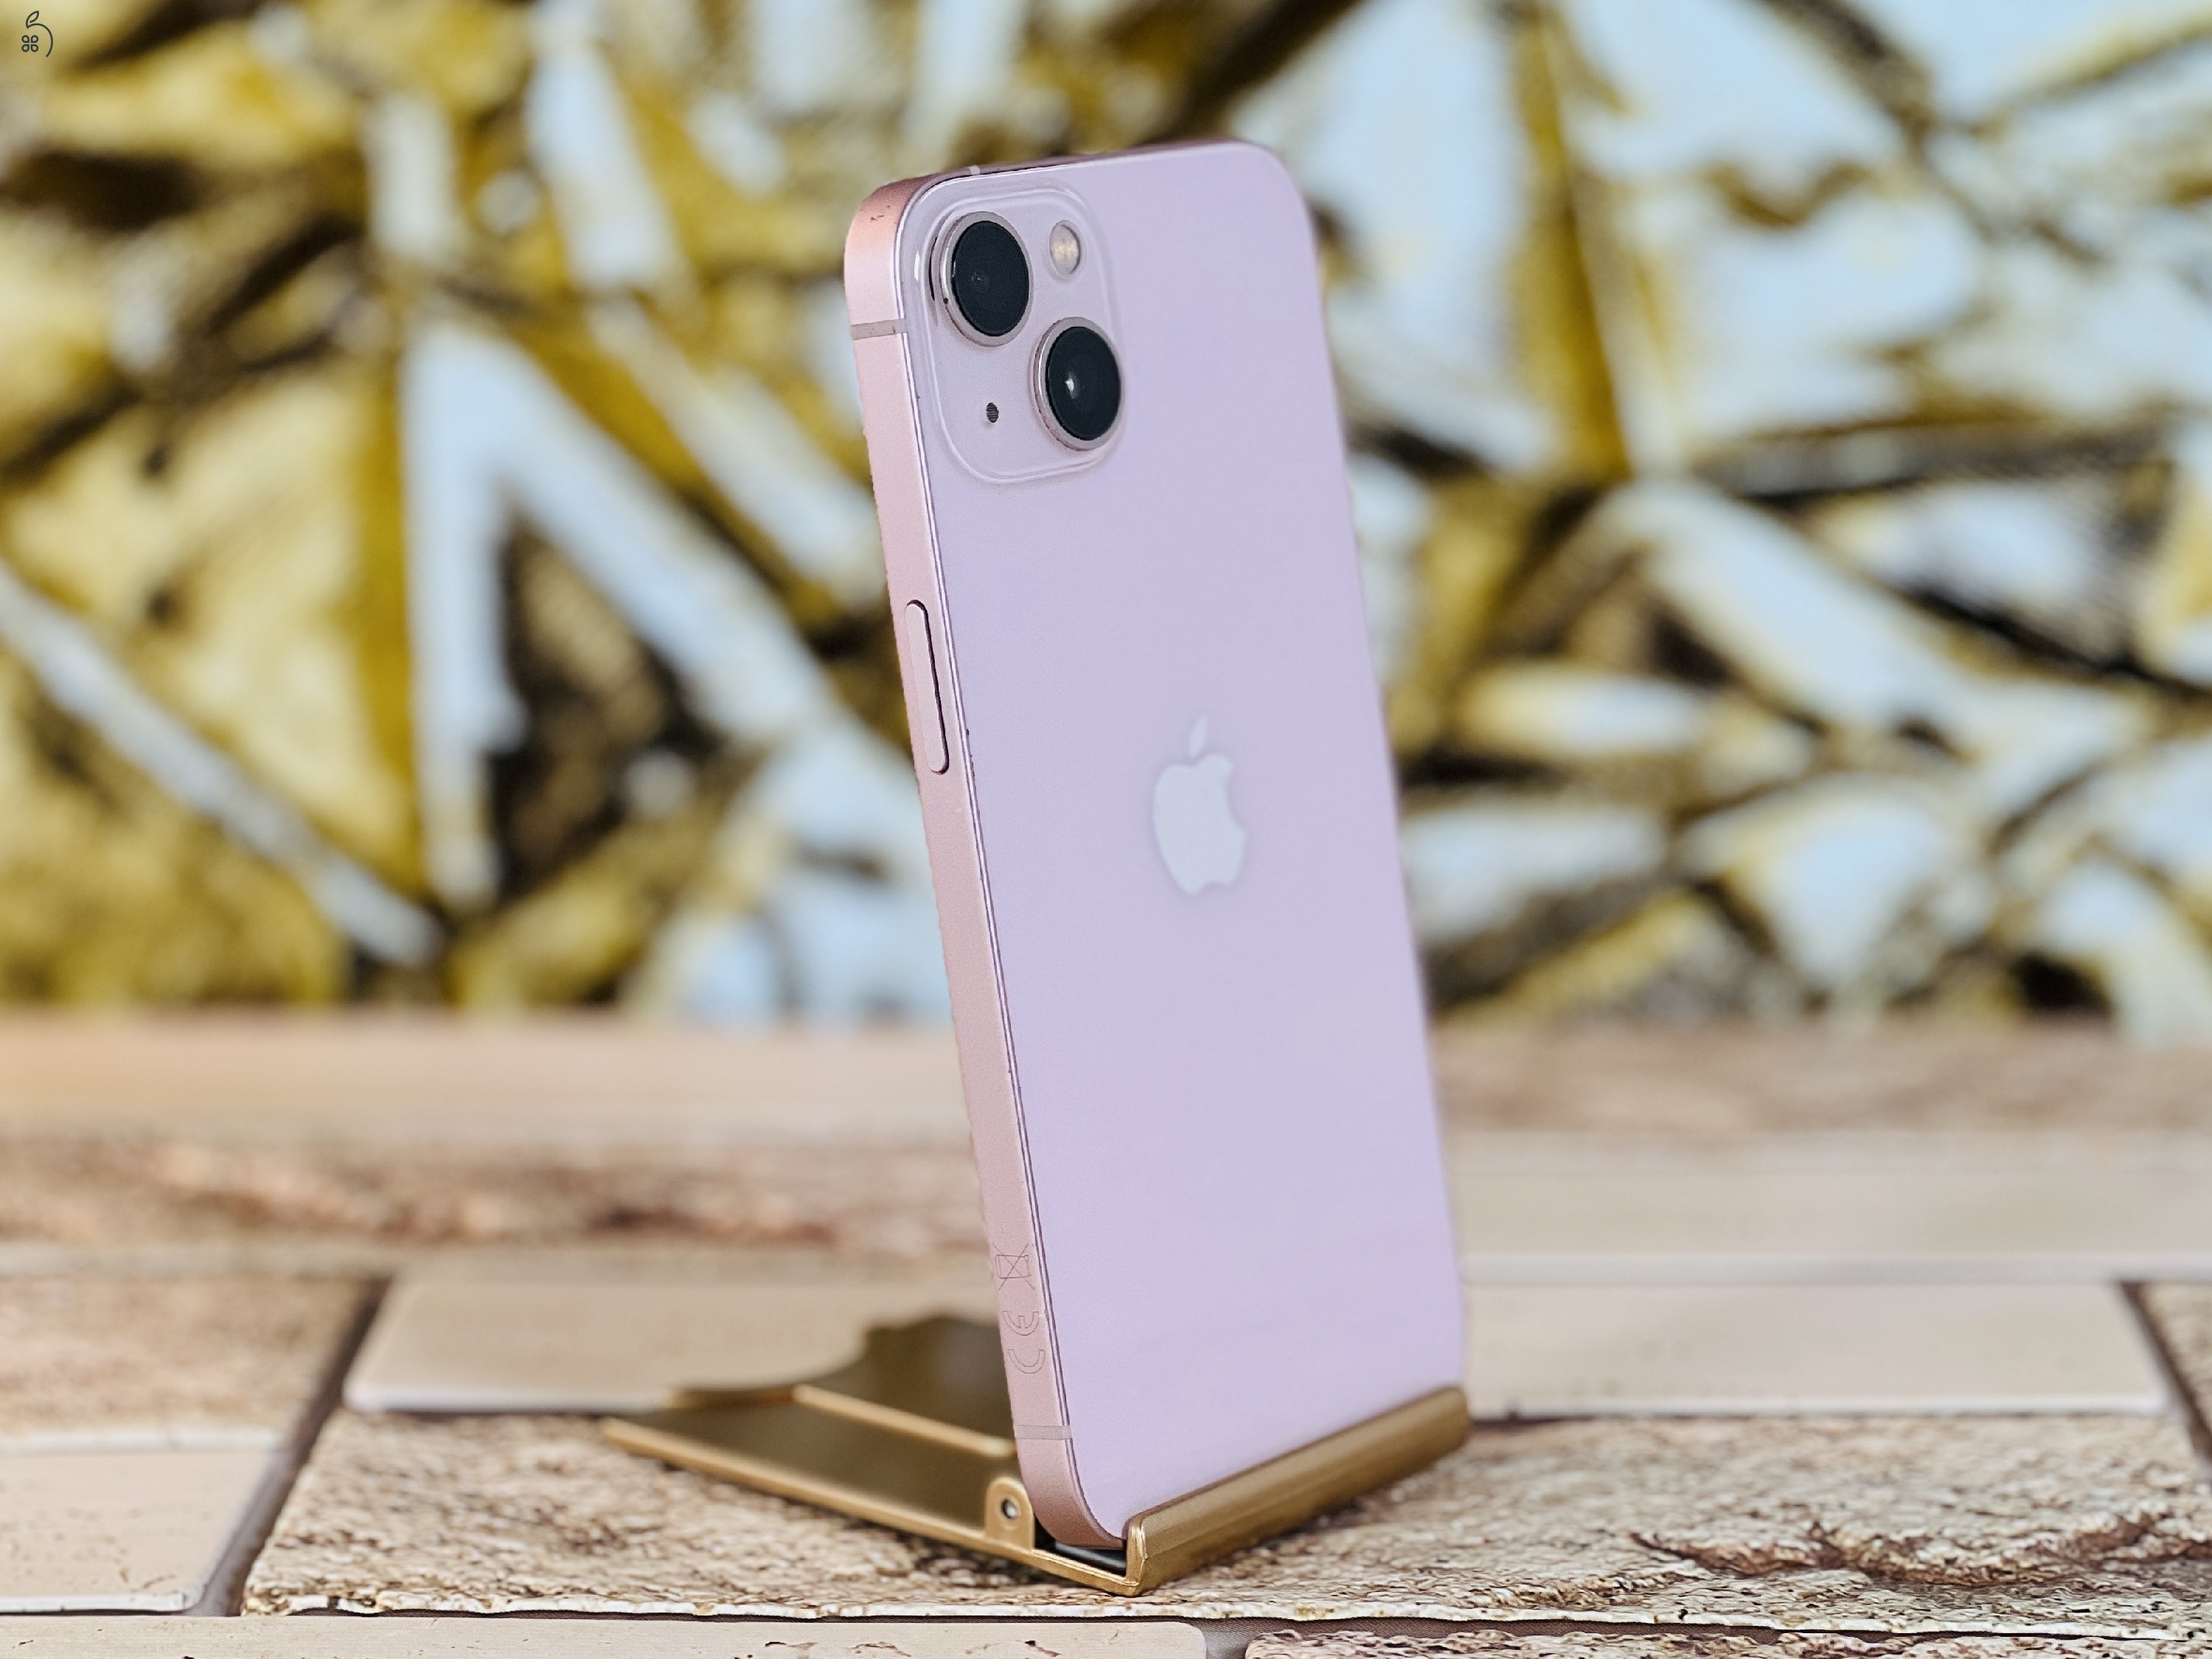 Eladó iPhone 13 128 GB Pink szép állapotú - 12 HÓ GARANCIA - A020